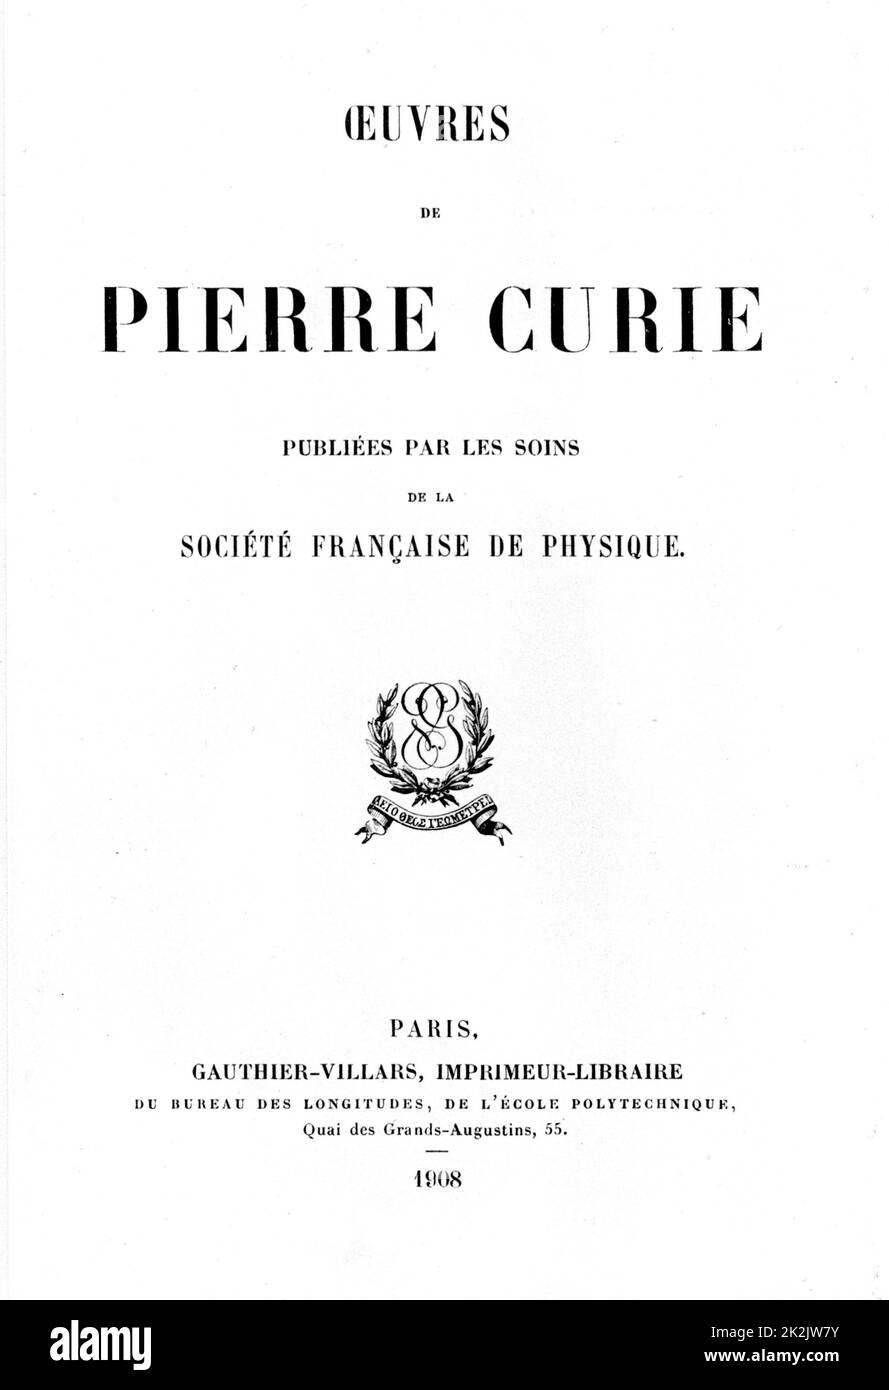 Titelseite von Oeuvres de Pierre Curie, Paris, 1908. Pierre Curie (1859-1906) französischer Chemiker. Stockfoto